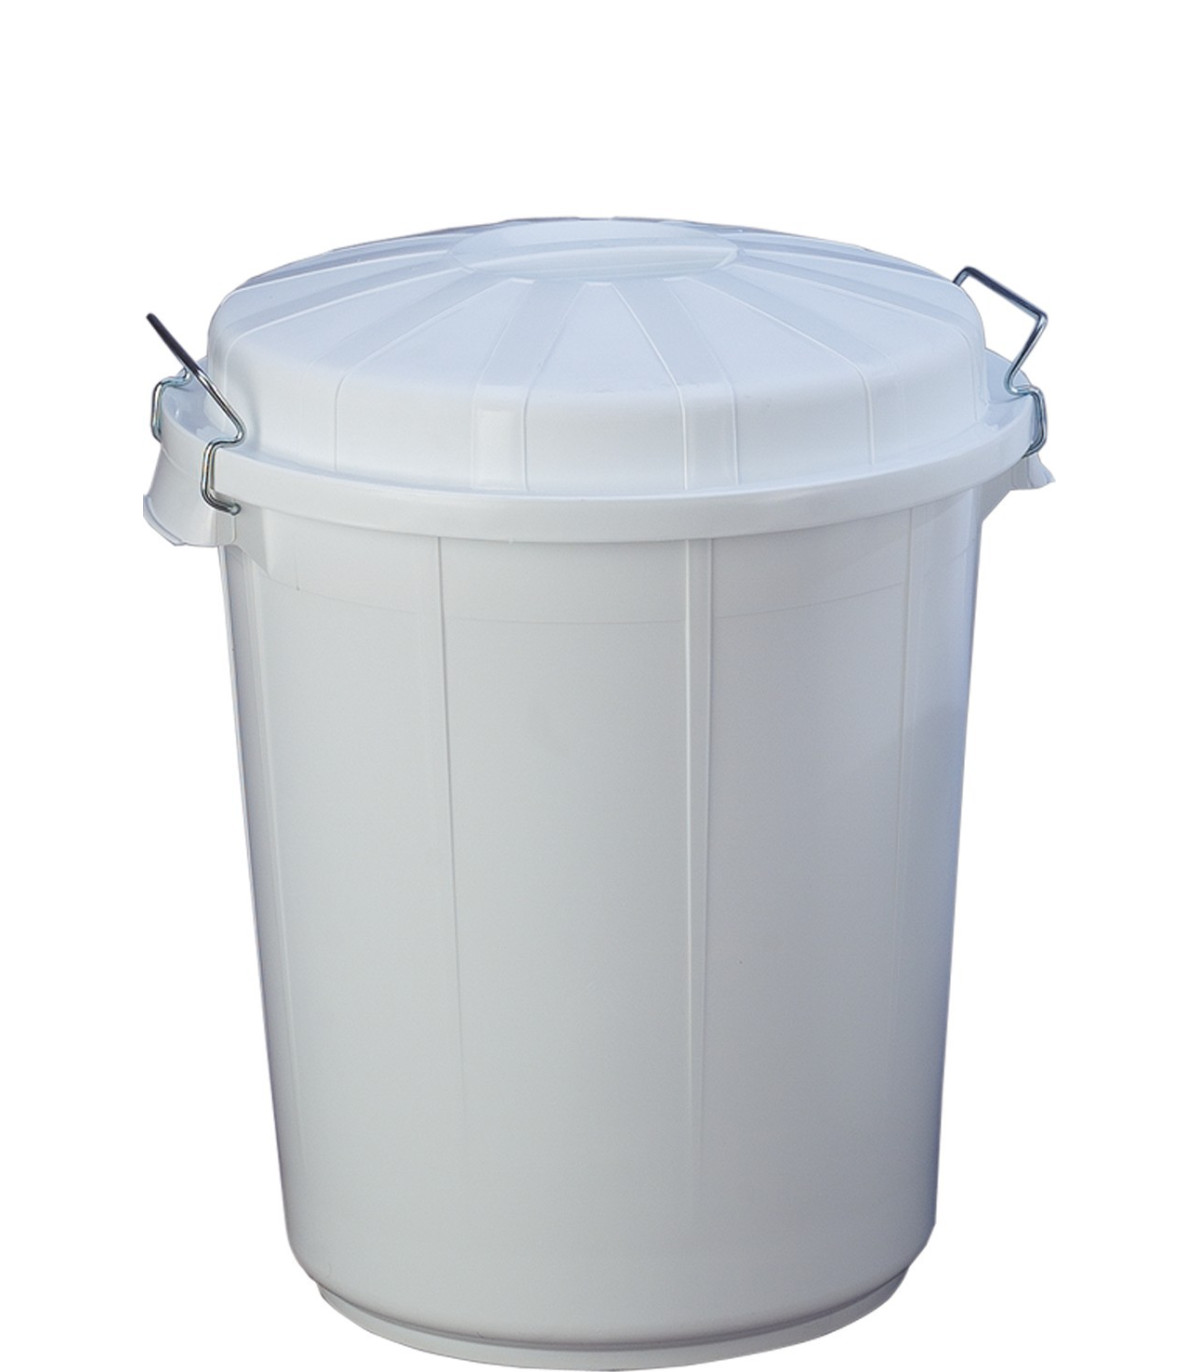 Cubo industrial de 100 litros para uso alimentario F23110 DENOX- FAMESA  skrc, comprar online